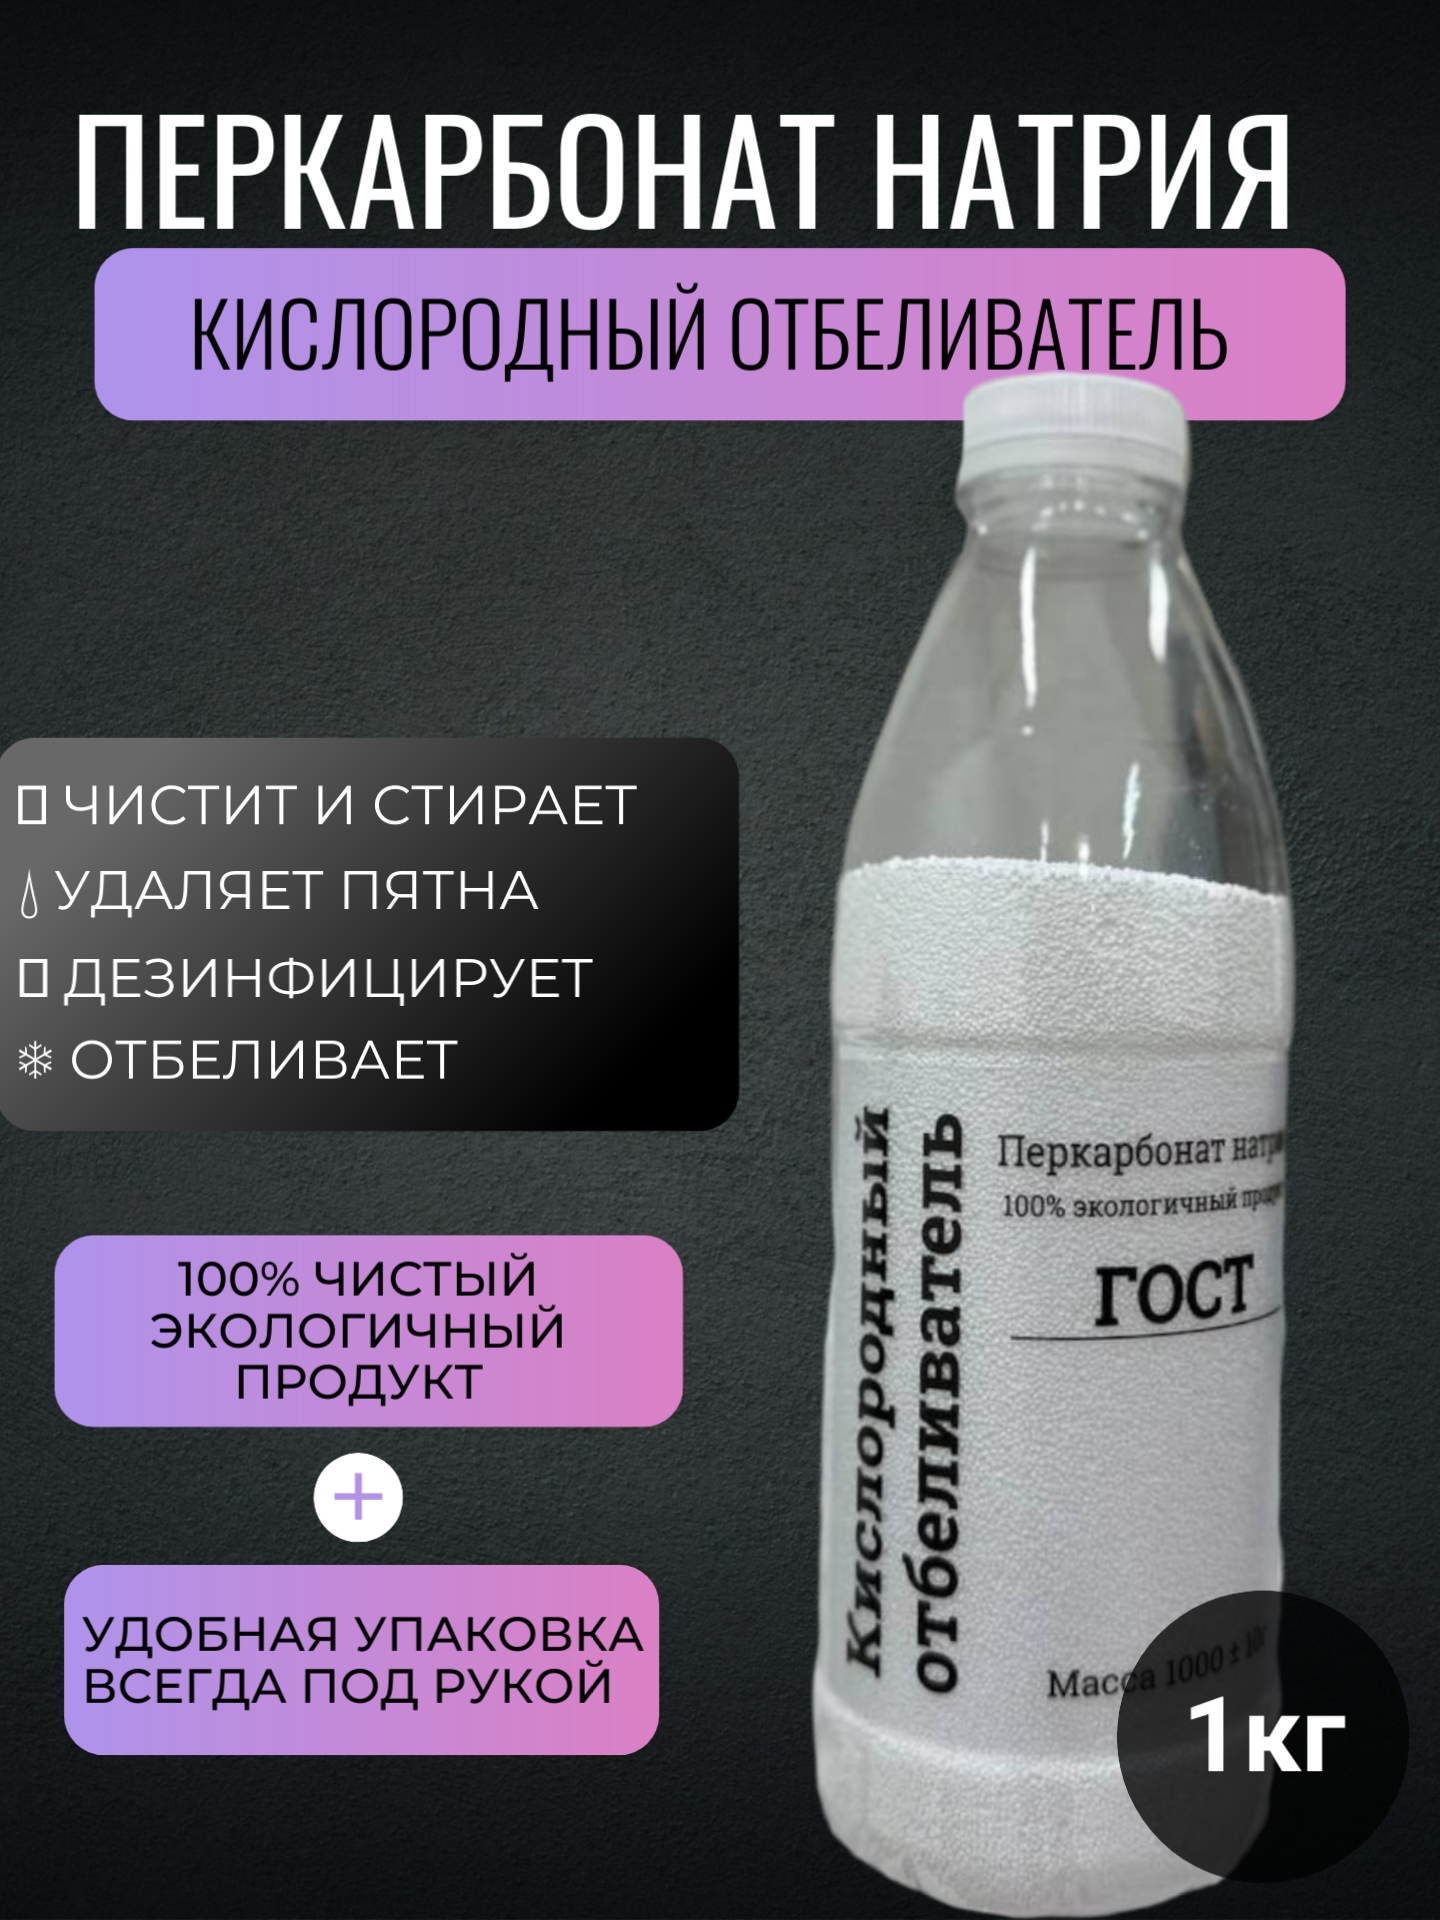 Перкарбонат натрия - Кислородный отбеливатель